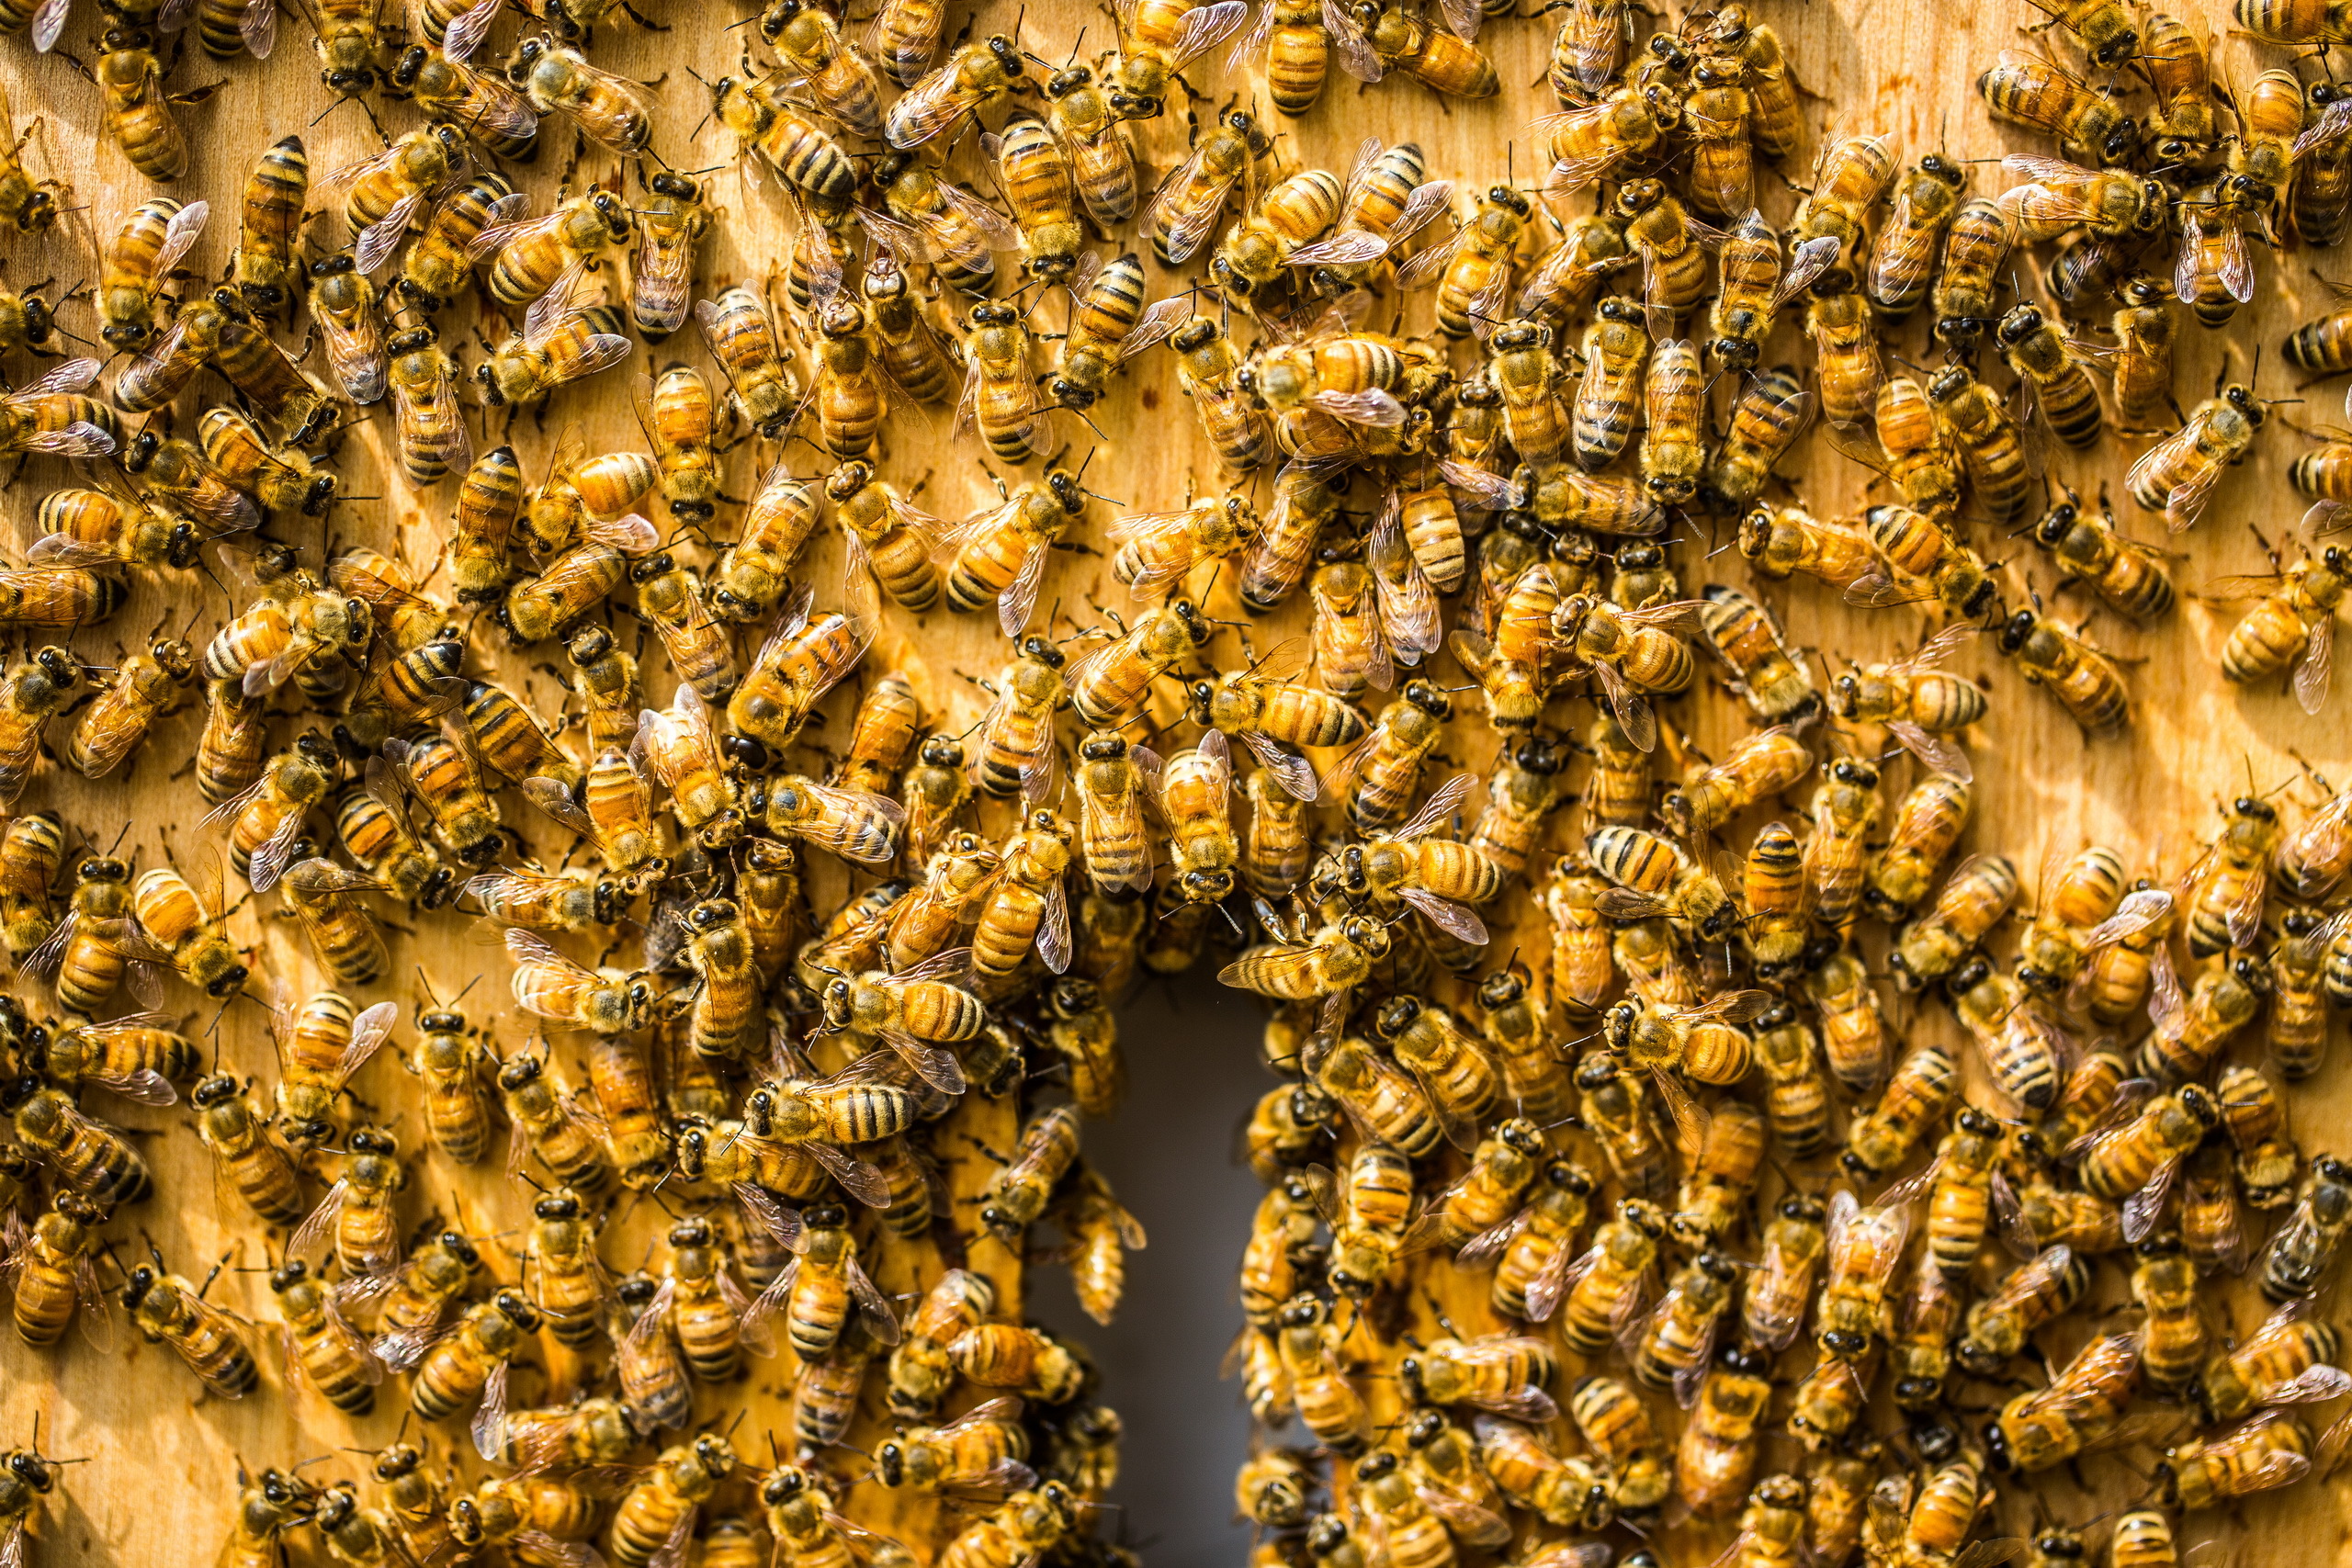 Почему много пчел